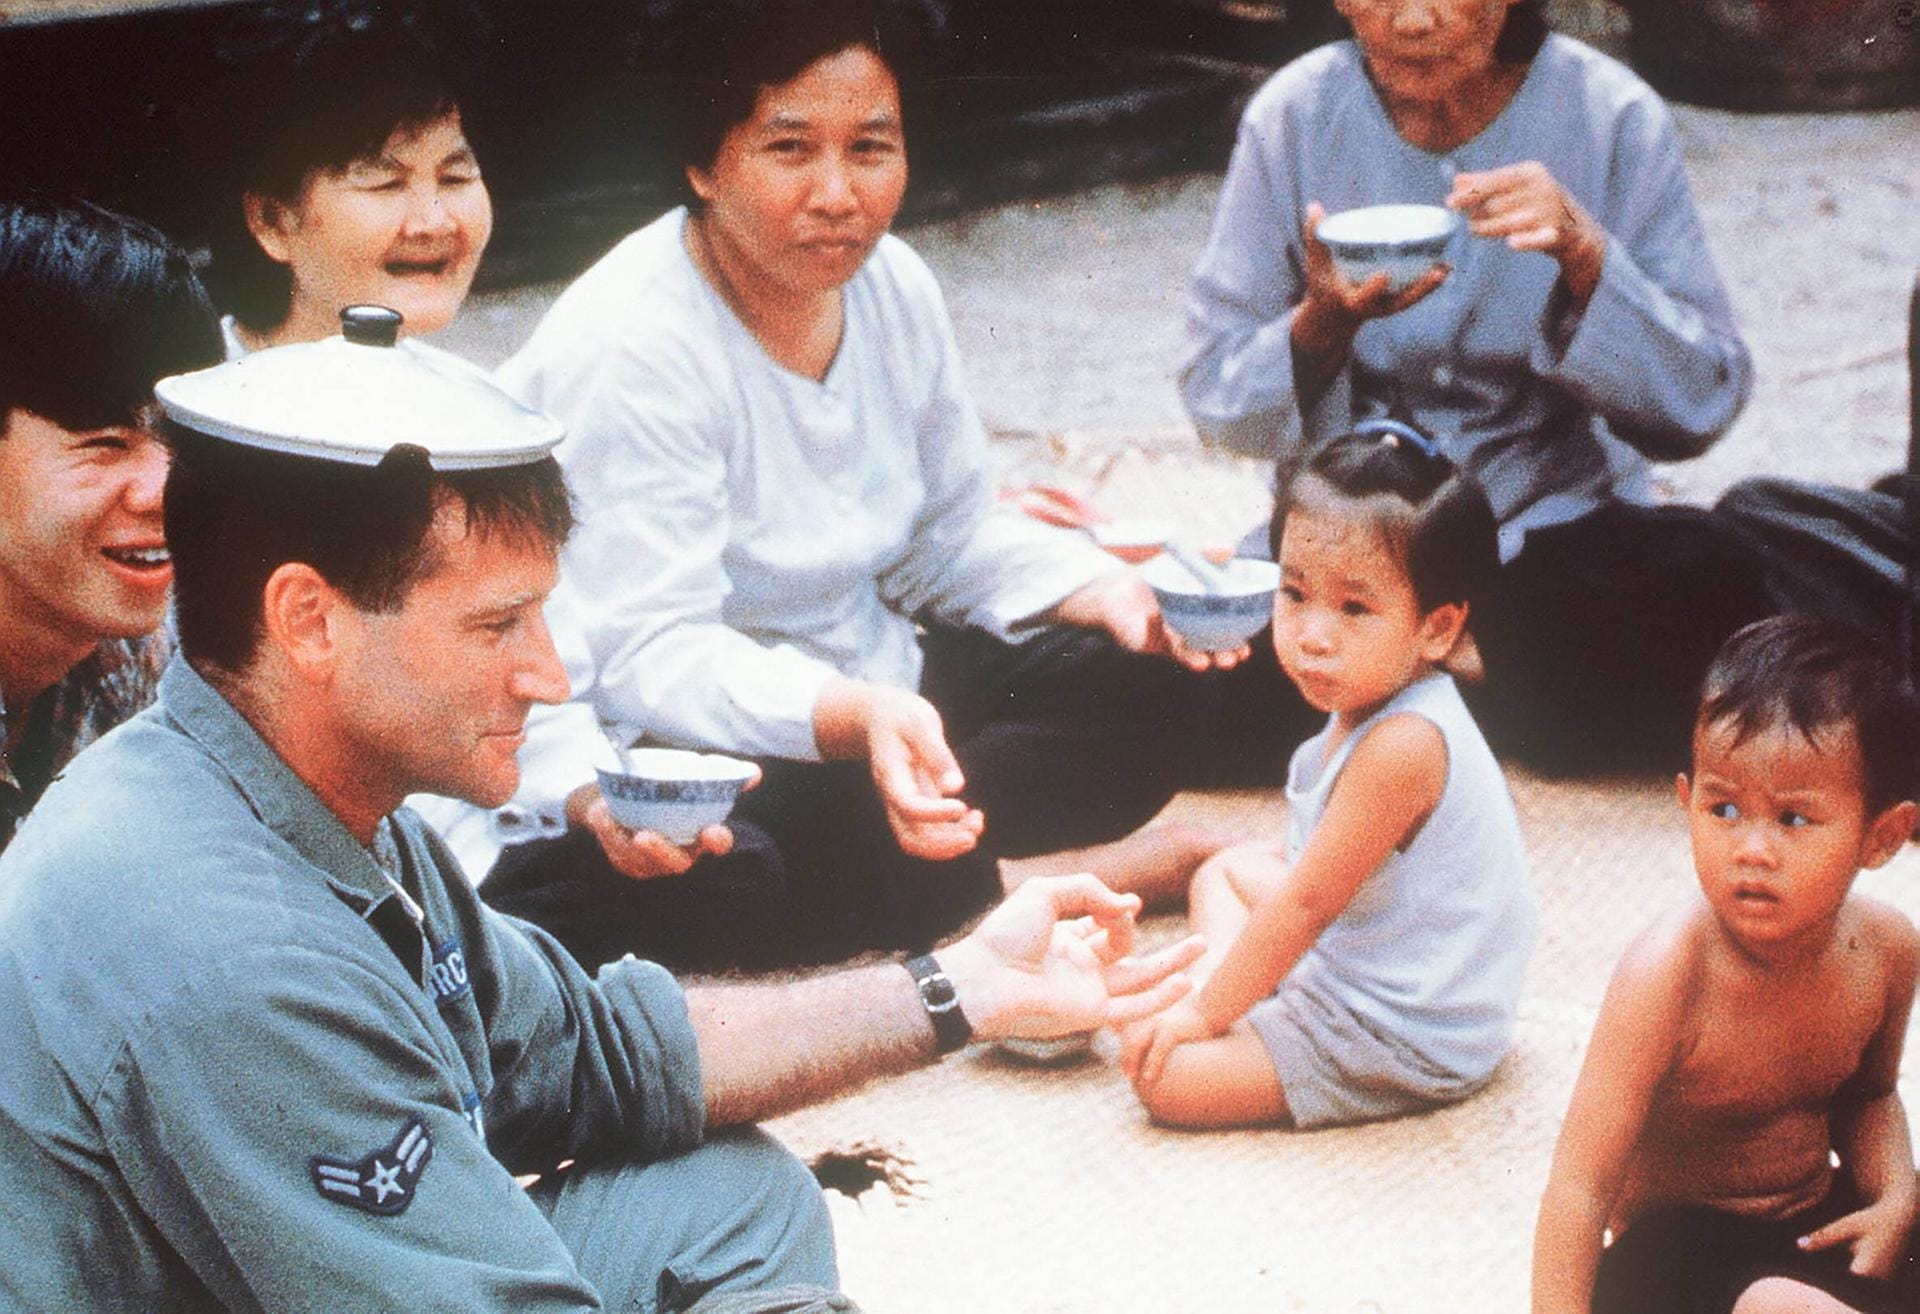 1987: "Good Morning, Vietnam"